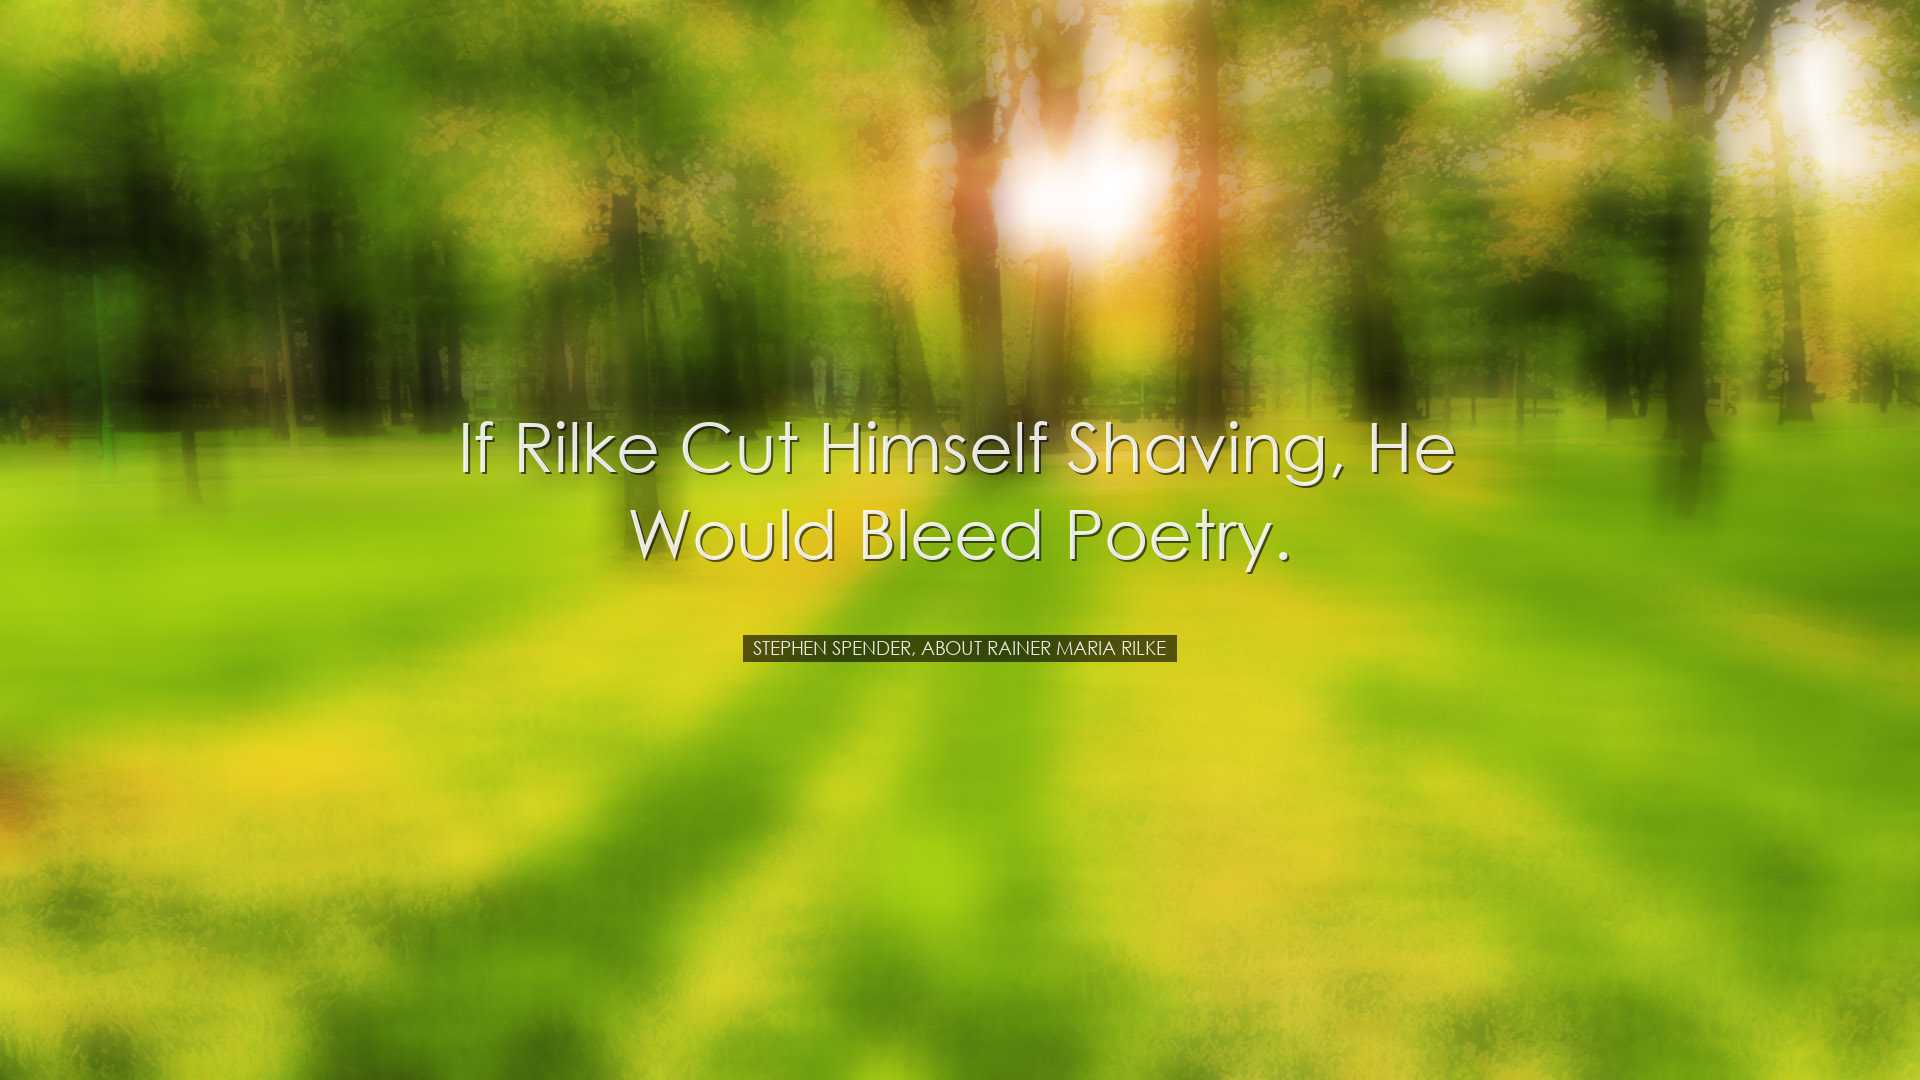 If Rilke cut himself shaving, he would bleed poetry. - Stephen Spe